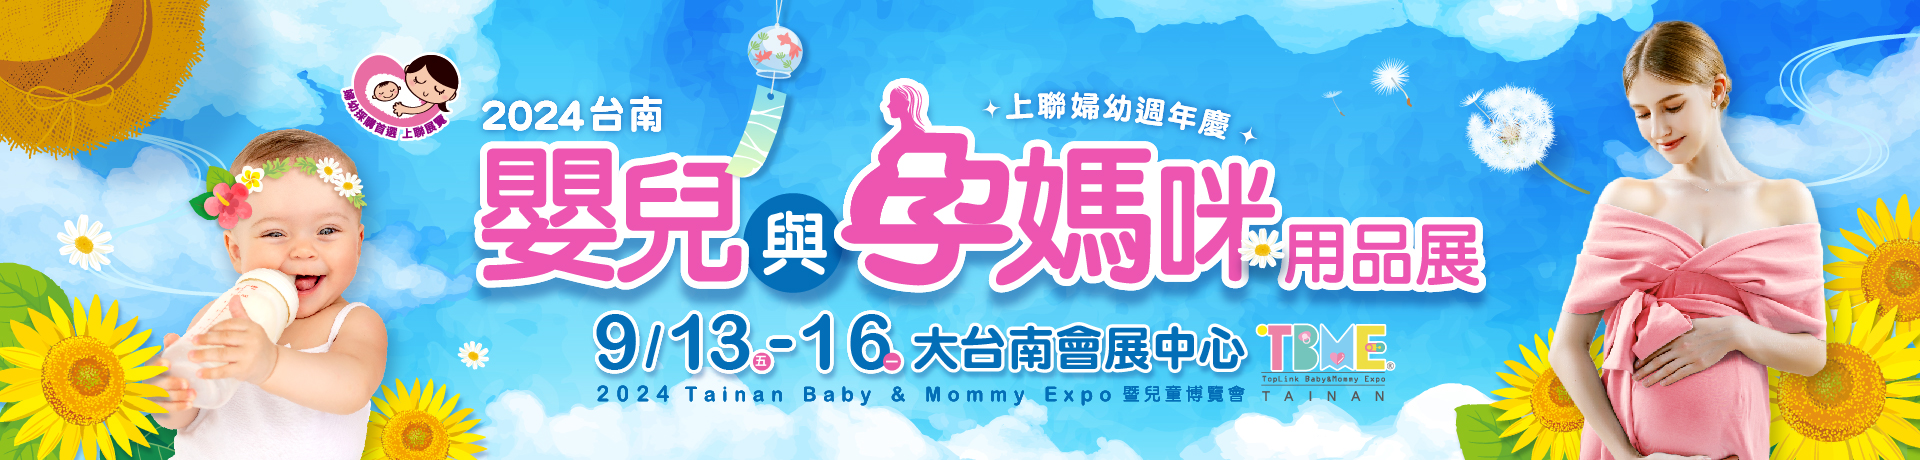 2024台南嬰兒與孕媽咪用品展暨兒童博覽會